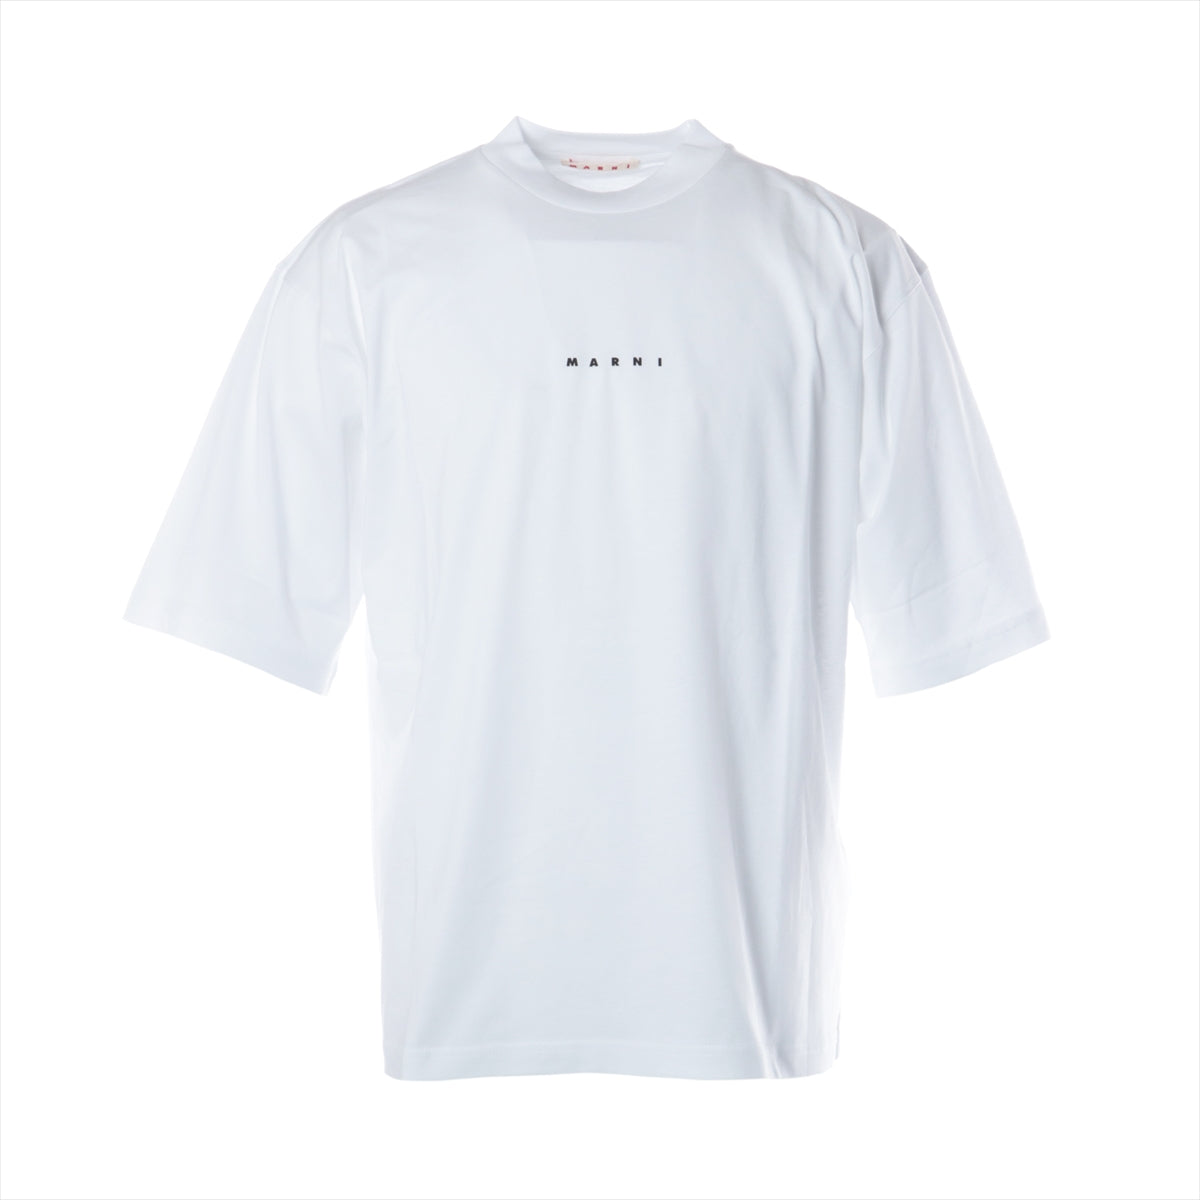 Marni マルニ 19SS ロゴ Tシャツ 46 美品